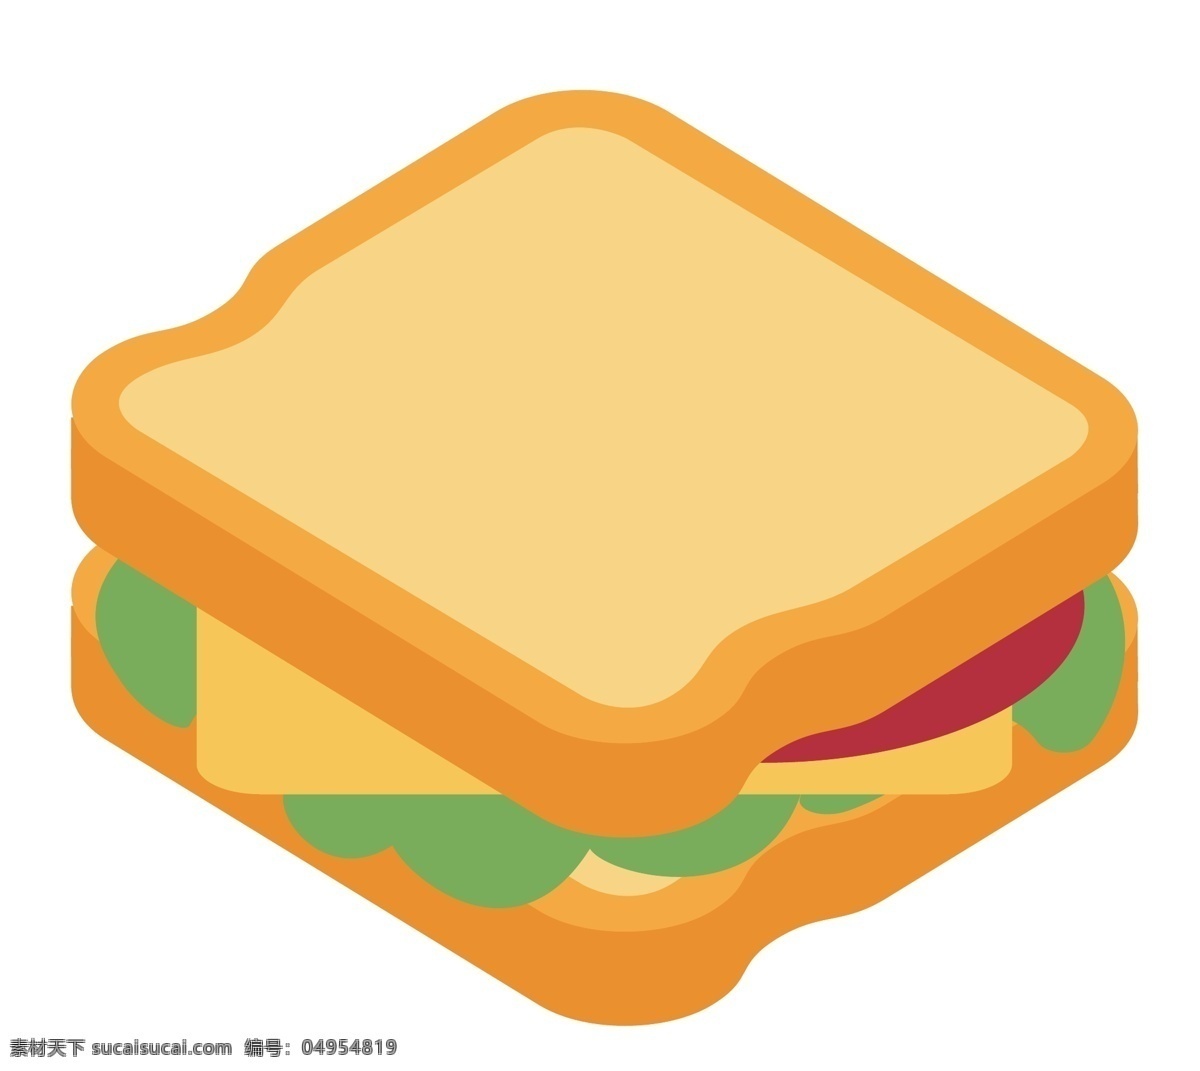 卡通 黄色 面包 插图 夹心面包 夹心三明治 红色西红柿 黄色面包 有机蔬菜 蔬菜插图 早餐三明治 营养三明治